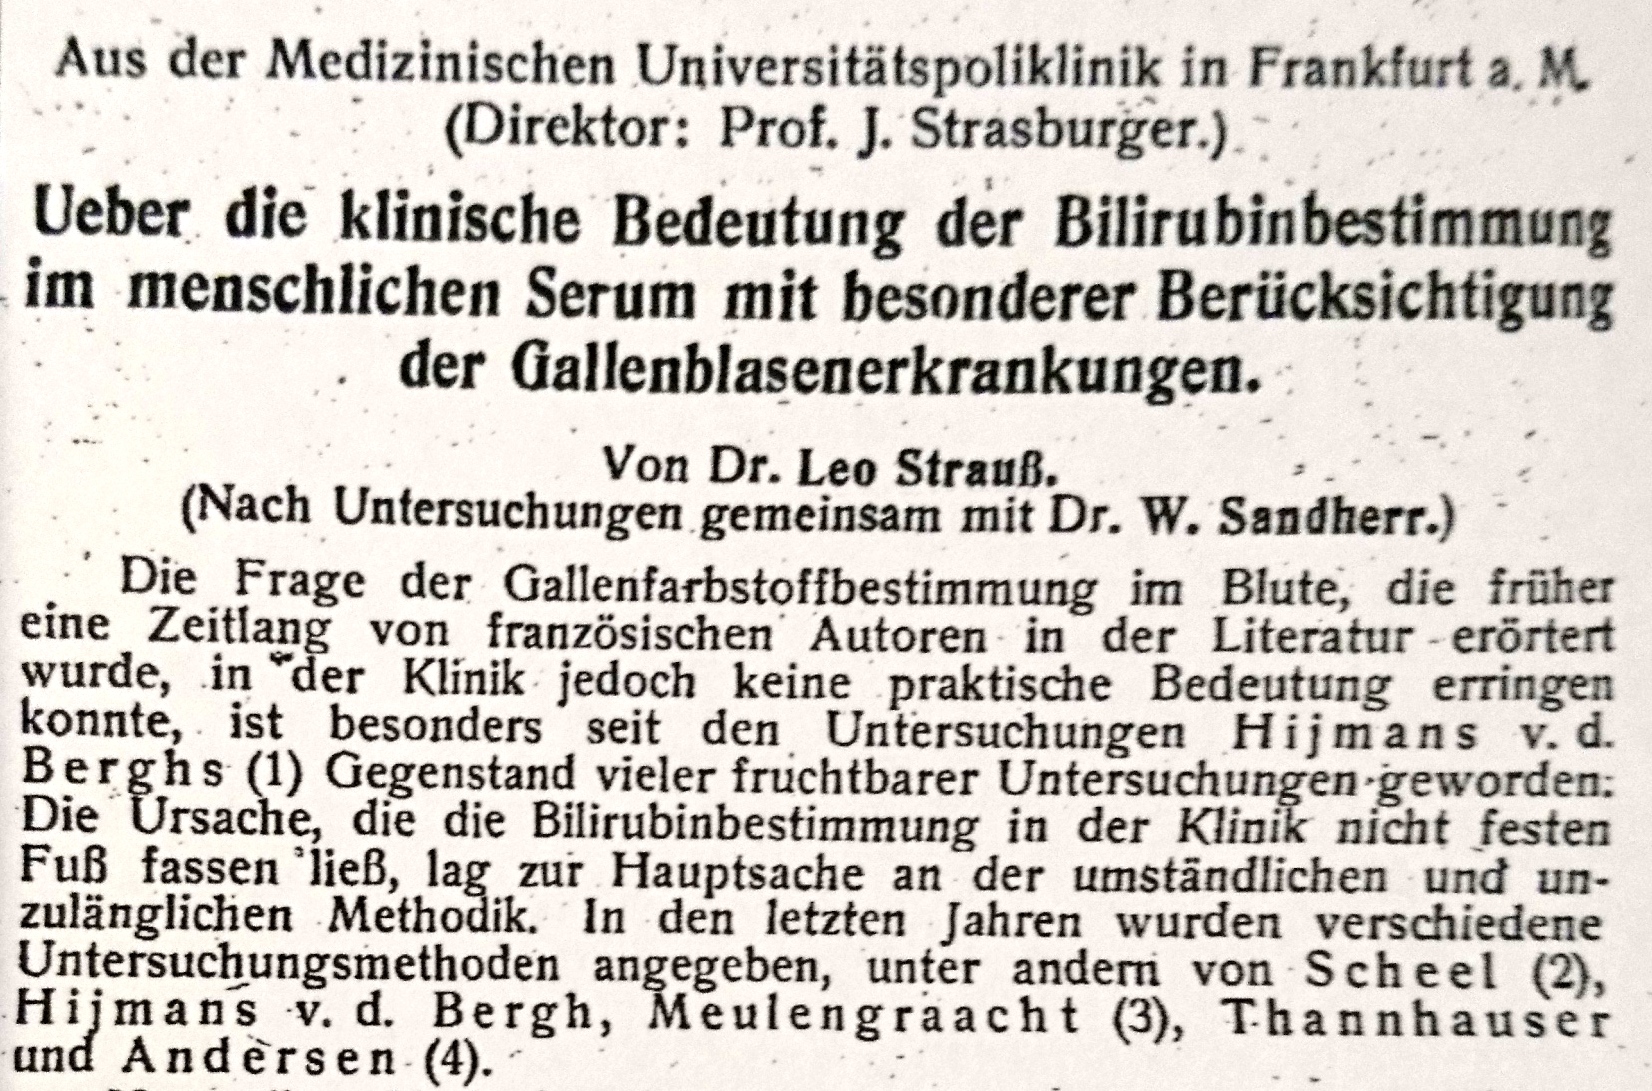 Deutsche Medizinische Wochenschrift 1923, Kopie Archiv H Je 